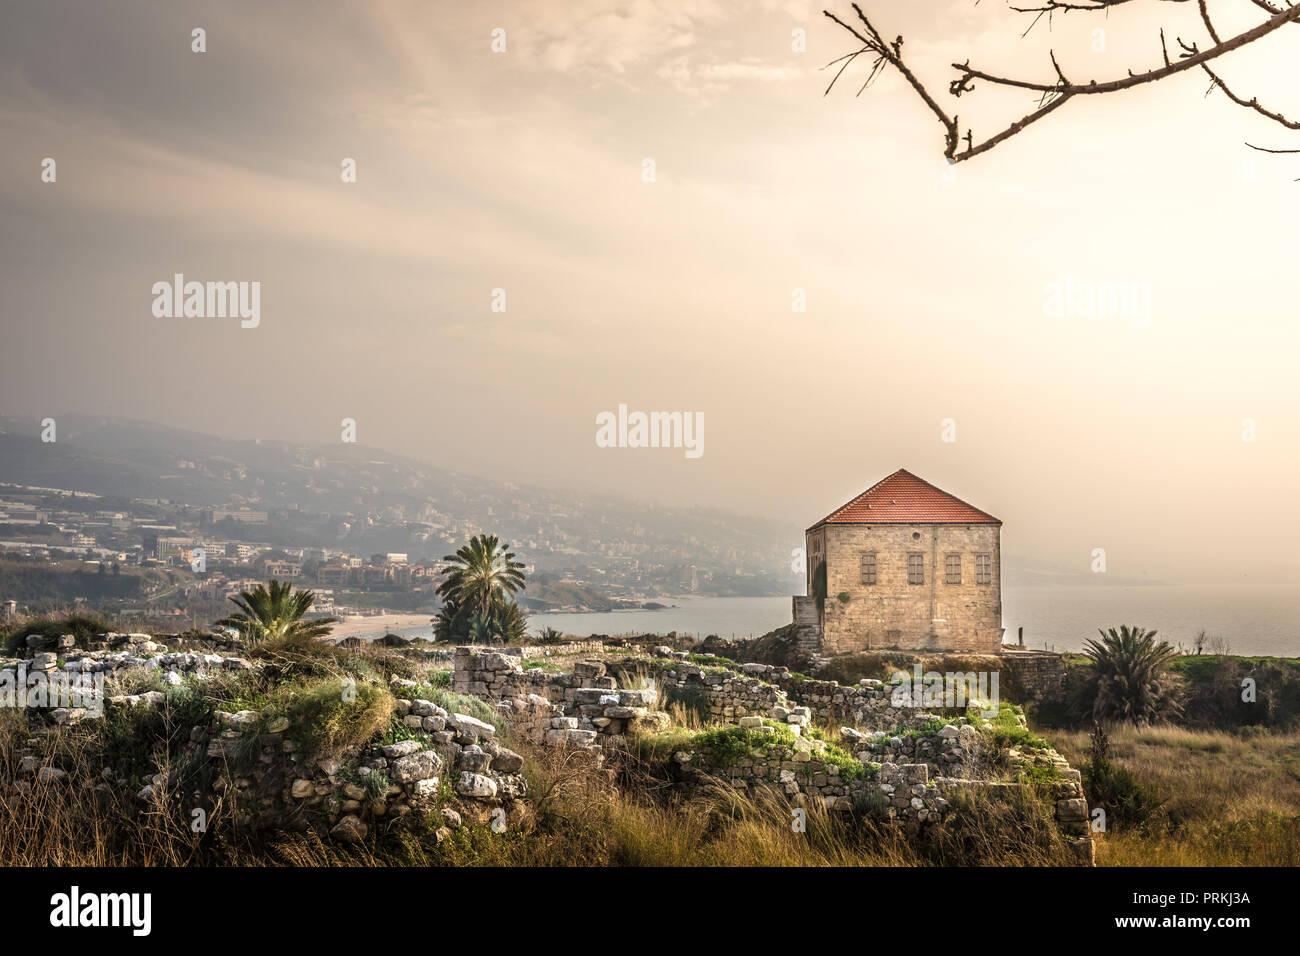 Vue paysage incroyable de Byblos, maison traditionnelle, rochers, palmiers, montagnes en arrière-plan. Haze lumière chaude au Liban Banque D'Images